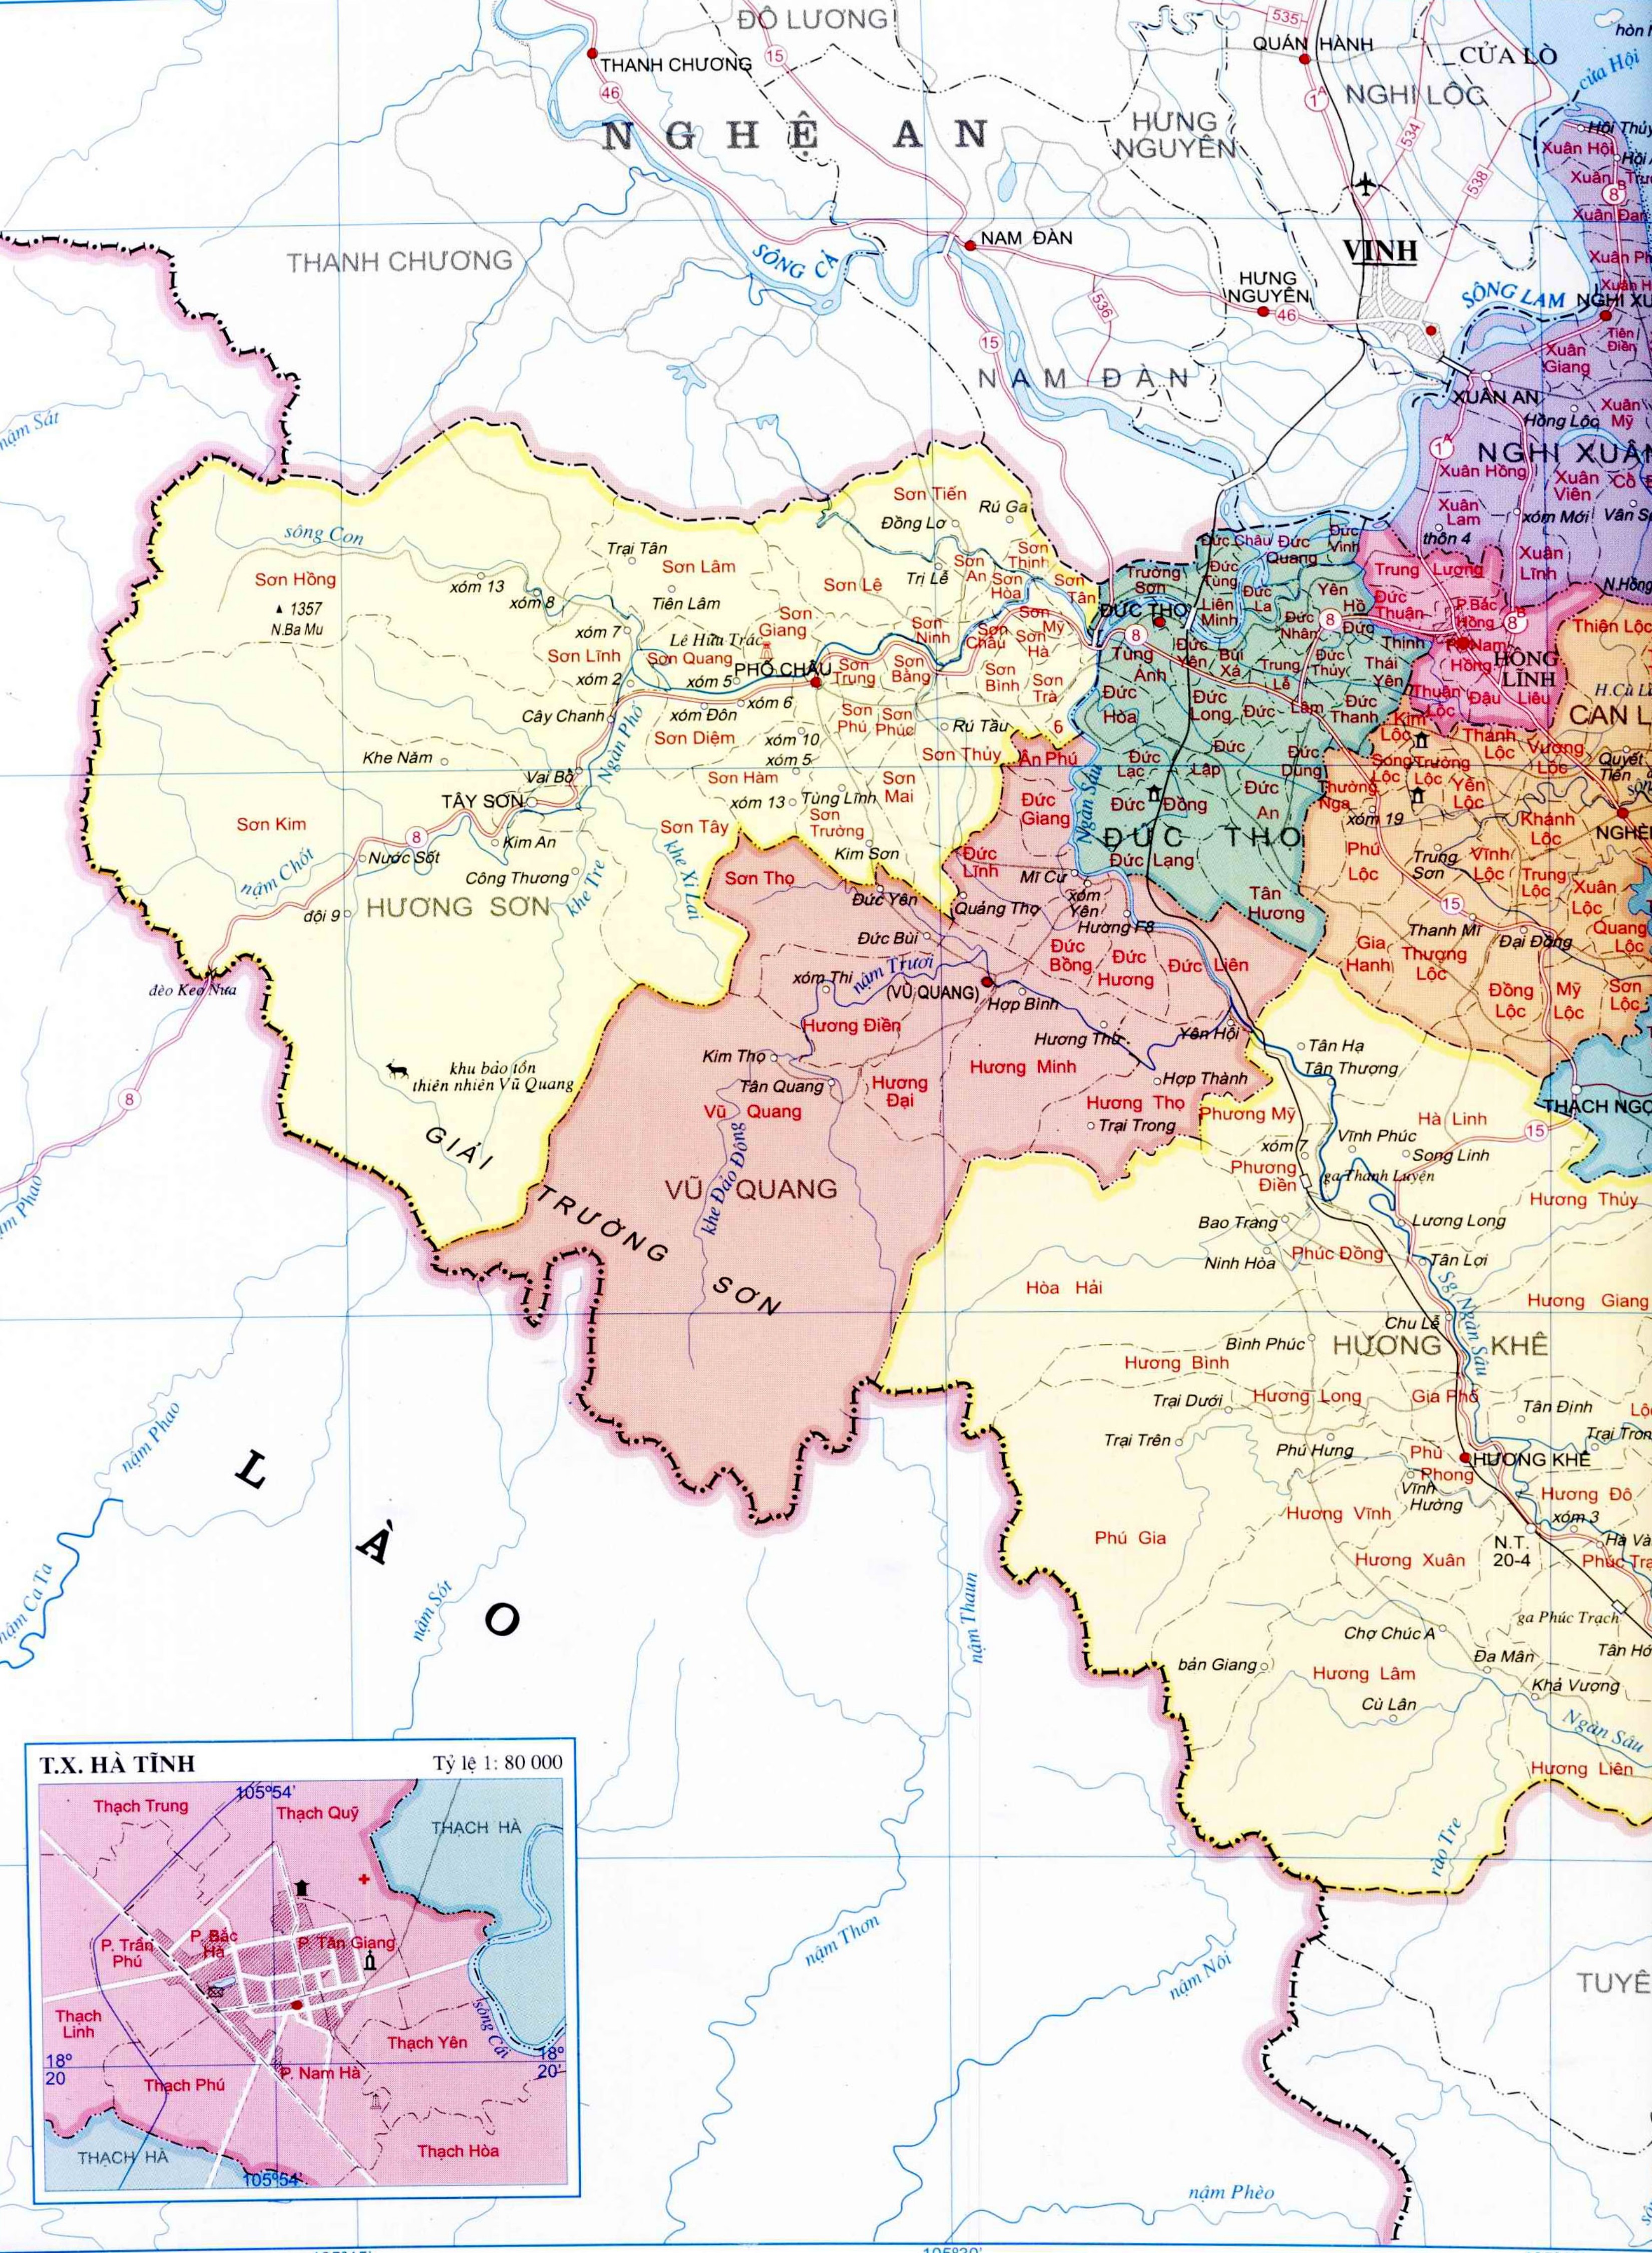 Bản đồ hành chính tỉnh Hà Tĩnh: Khám phá tỉnh Hà Tĩnh với bản đồ hành chính mới nhất của chúng tôi. Tìm kiếm thông tin chi tiết về các địa điểm, tài nguyên, các tuyến đường và cơ quan hành chính. Giúp bạn dễ dàng lên kế hoạch cho chuyến đi của mình.